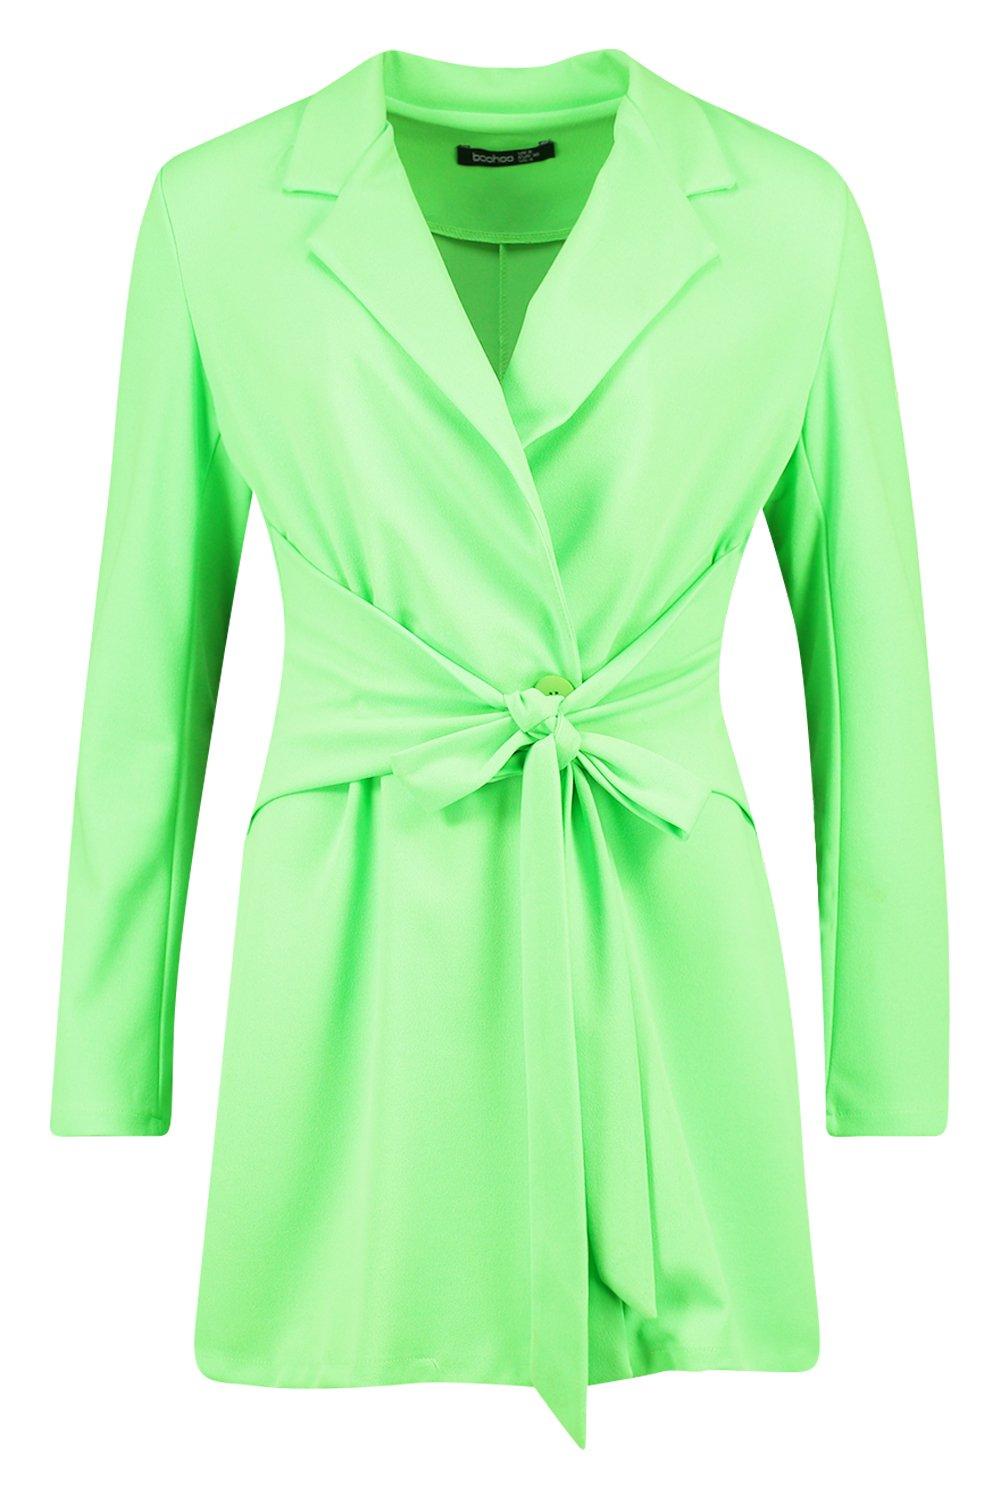 boohoo neon green dress